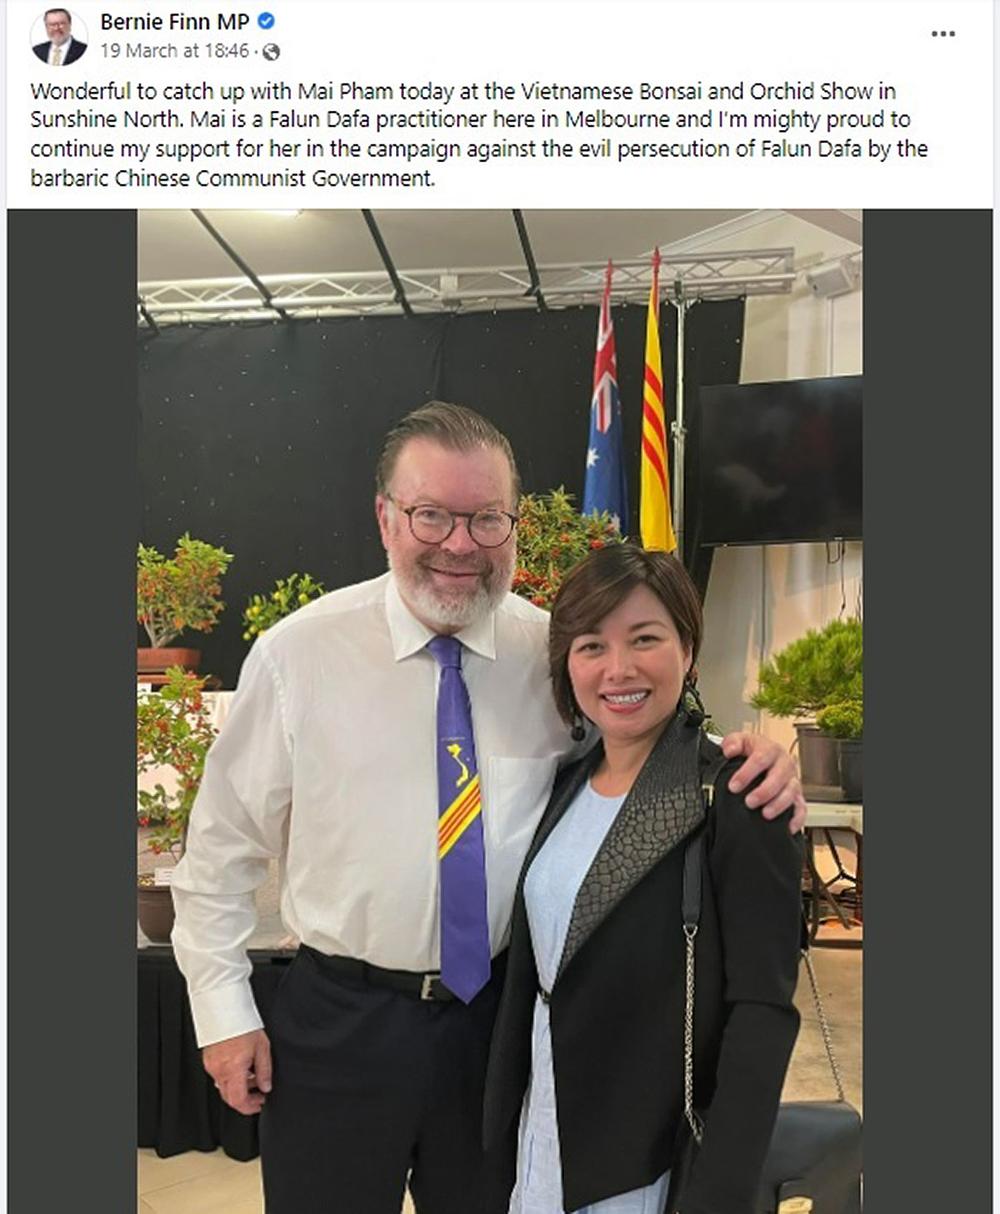 Bernie Finn, član opozicije u zakonodavnom vijeću u parlamentu Viktorije, podijelio je svoju sliku s Mai Pham na svom Twitter računu.